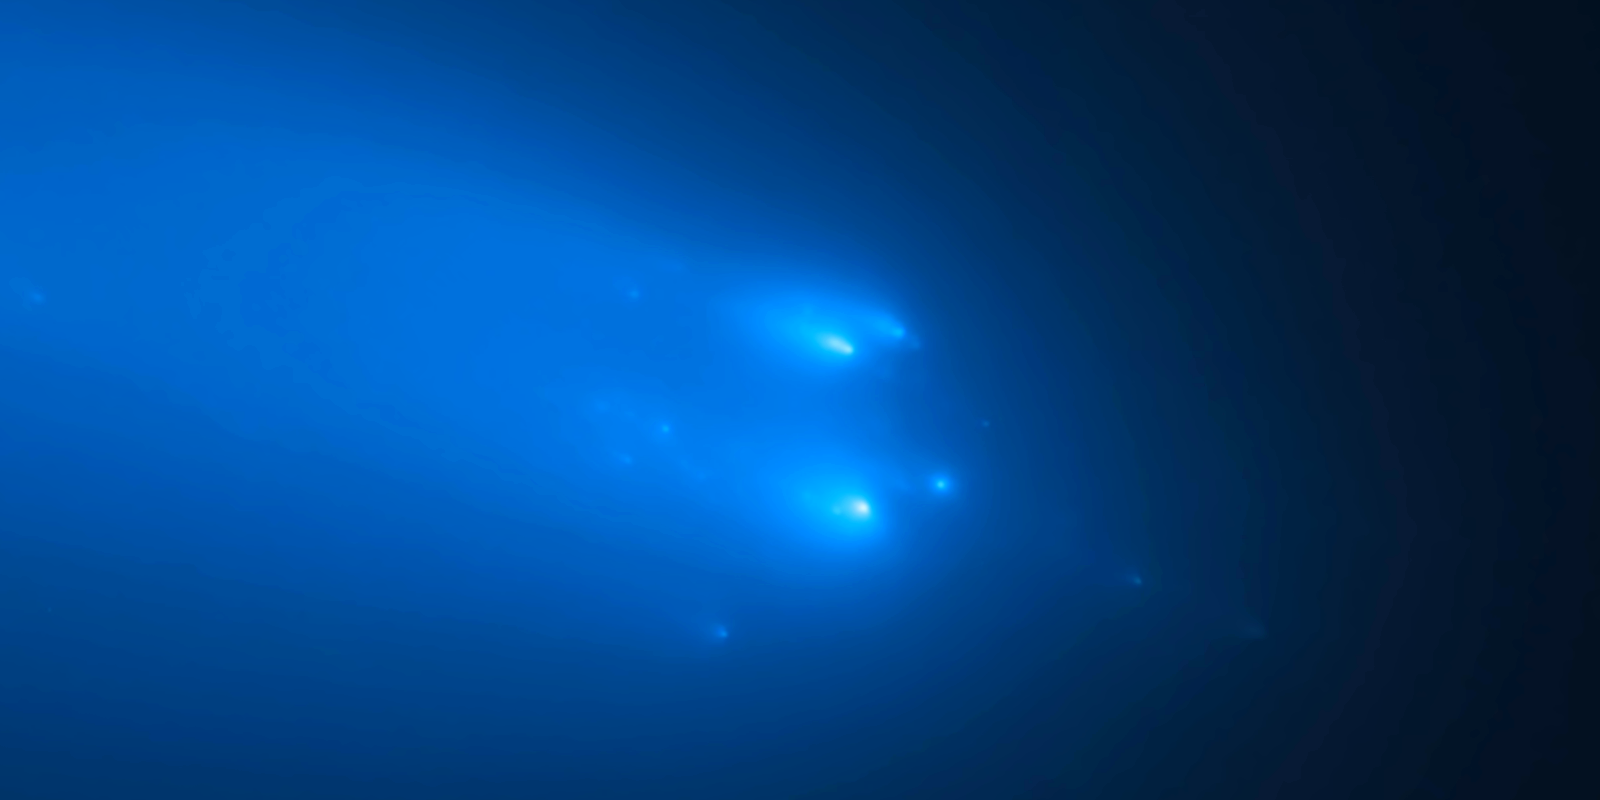 NASA Atlas Comet Disintegration